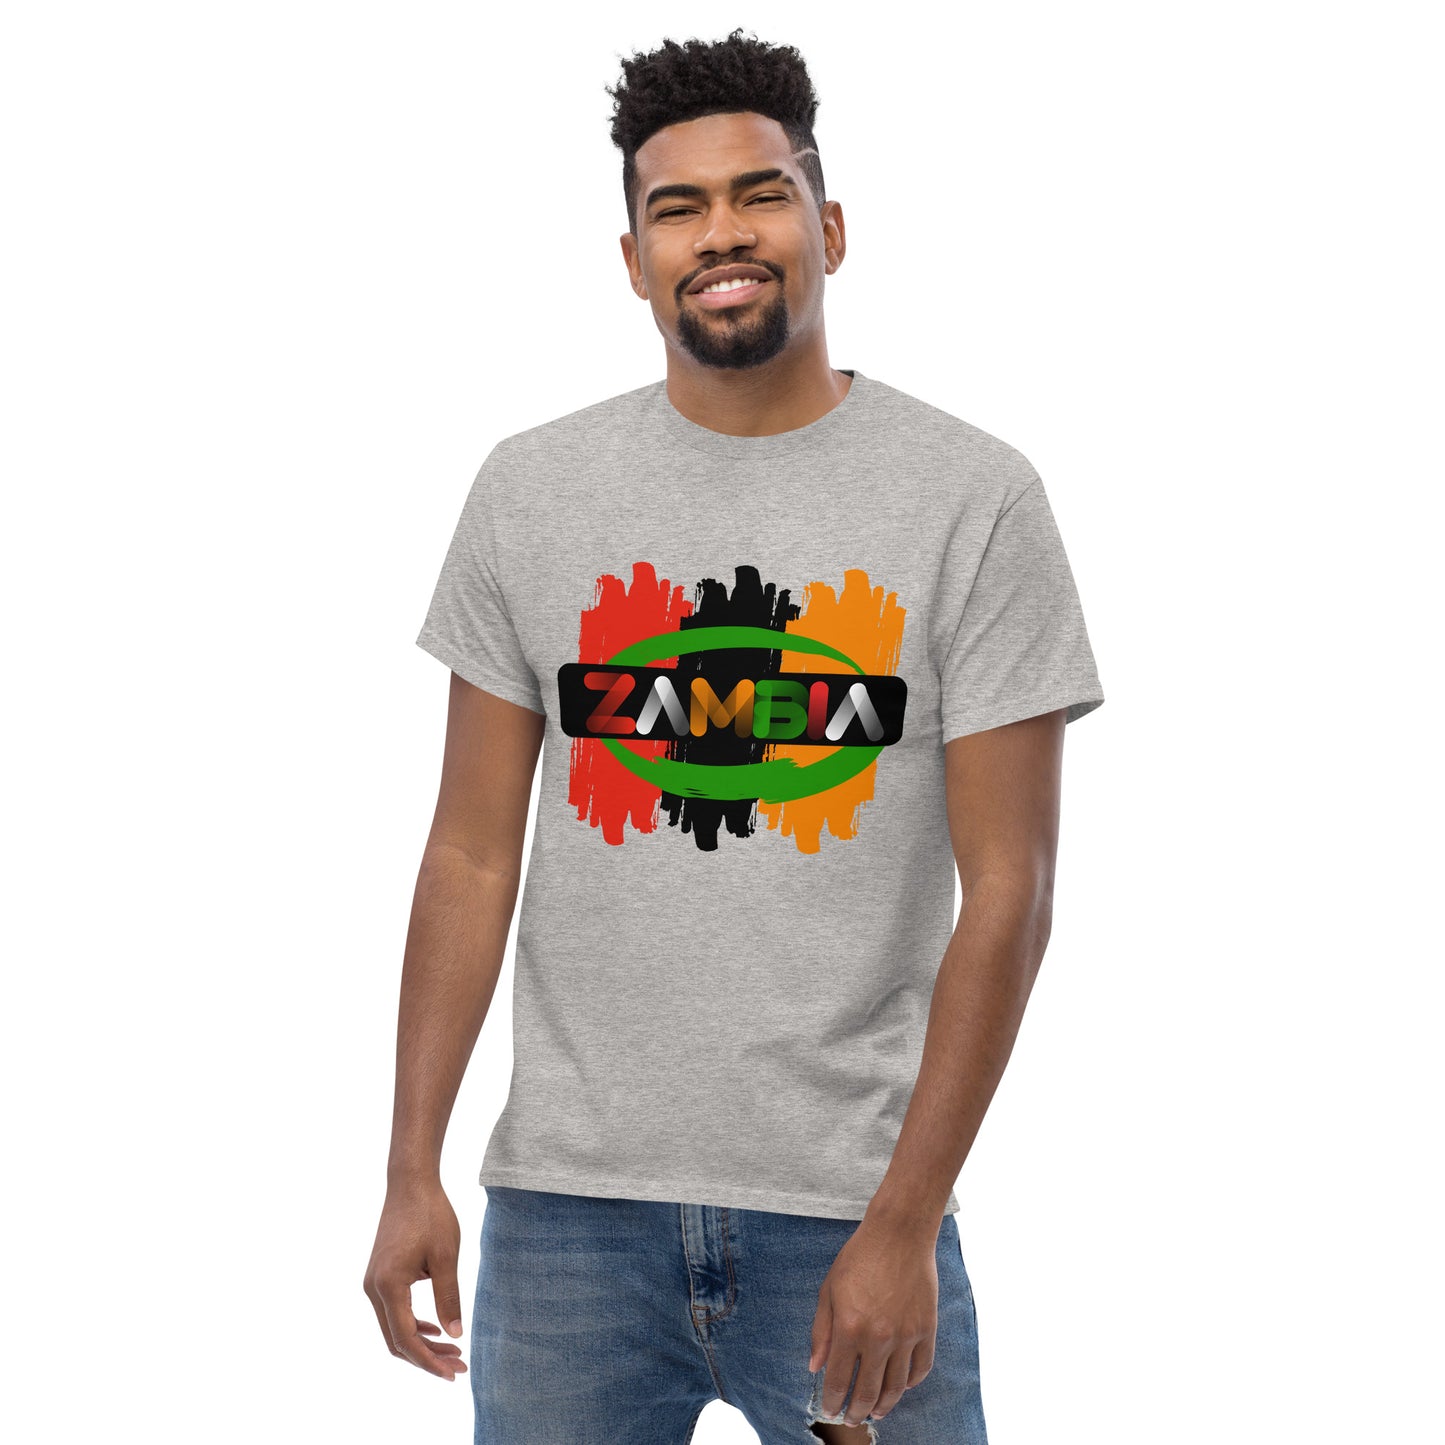 Men's Zambia classic t shirt